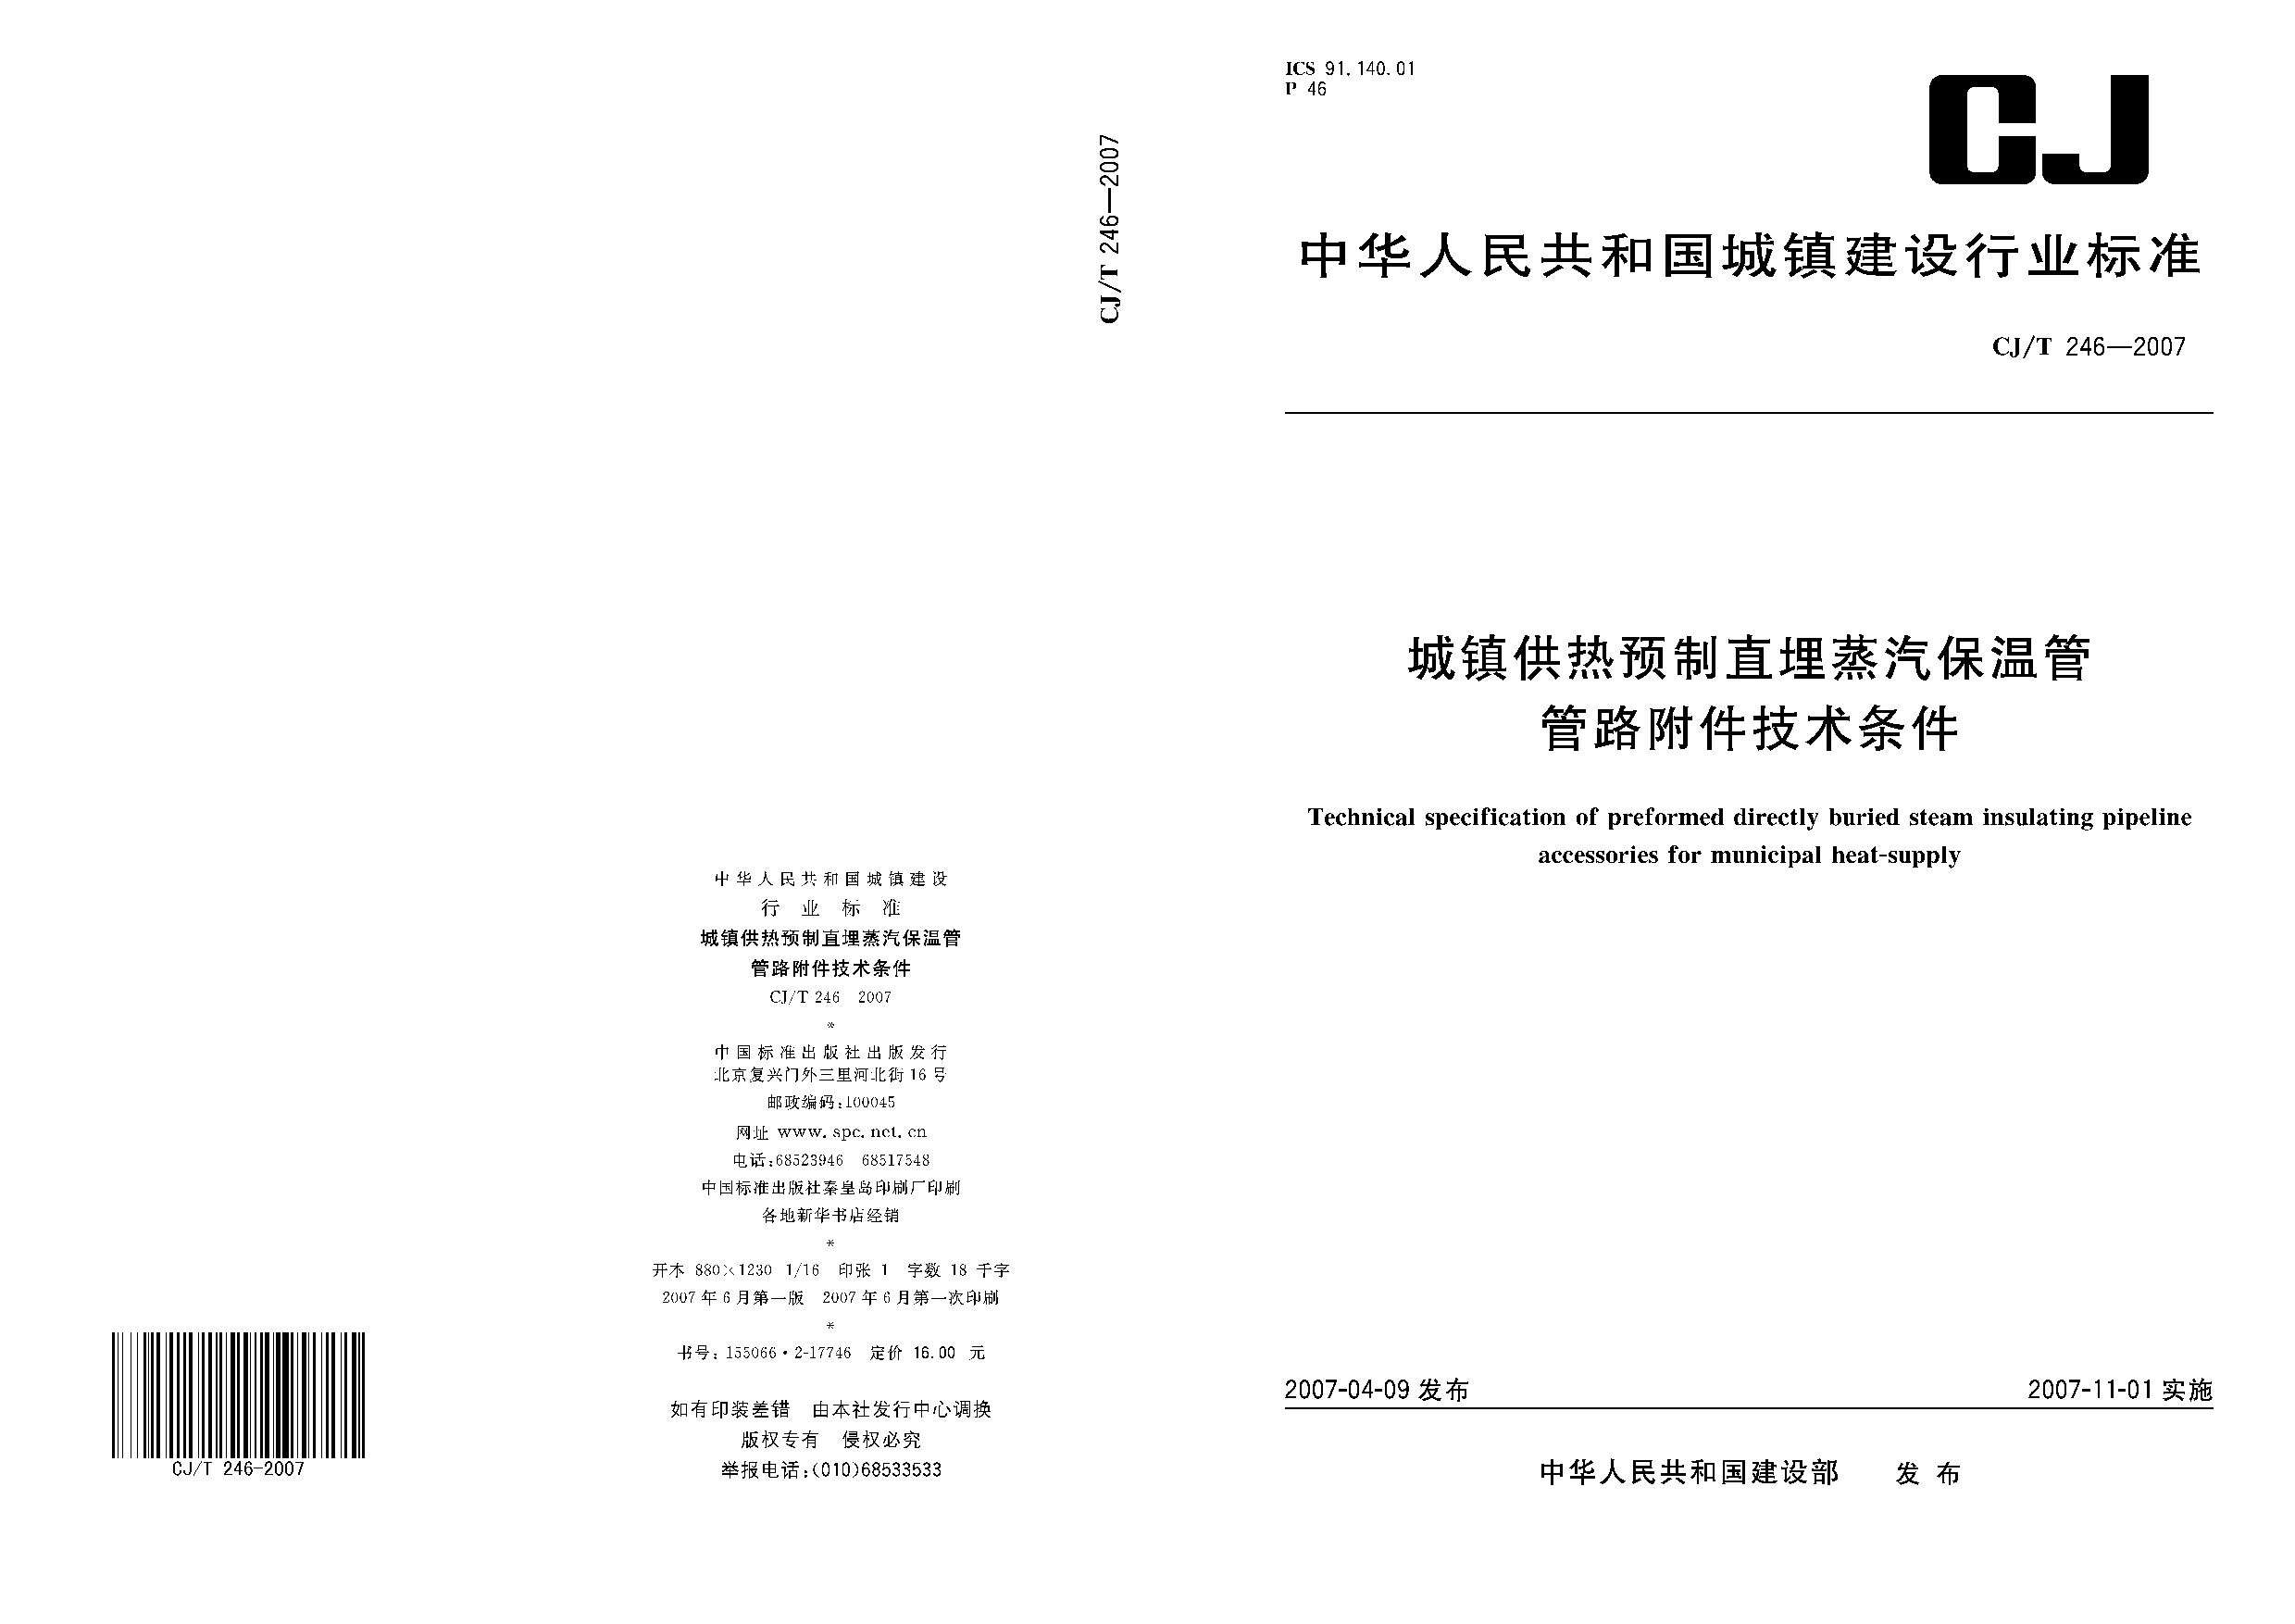 CJ/T 246-2007封面图